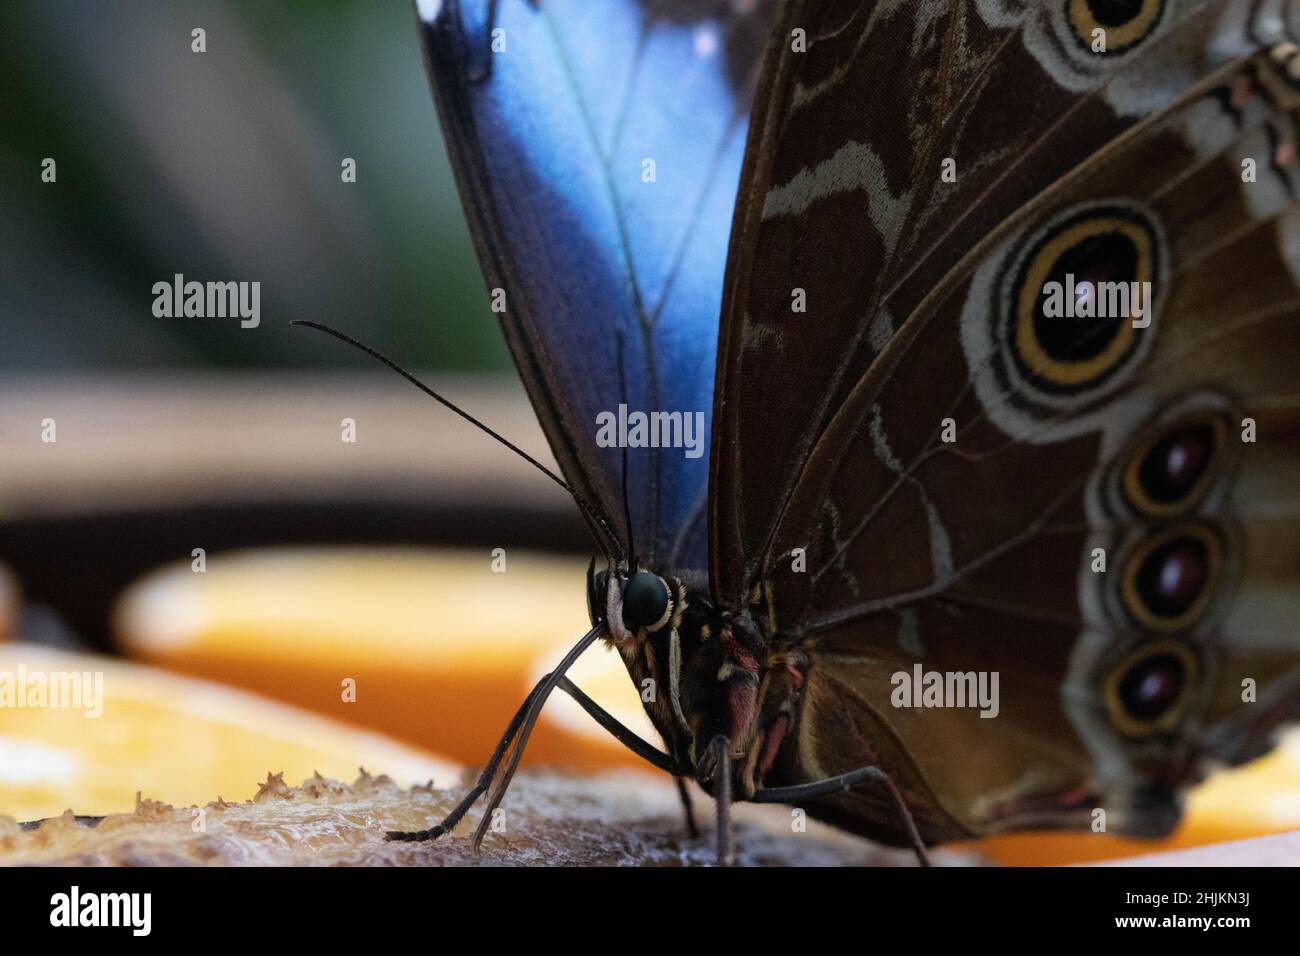 Nahaufnahme eines Schmetterlings (Blauer Morphofalter) von schräg vorne mit Ansicht des Flügels von Innen und Außen. Stock Photo